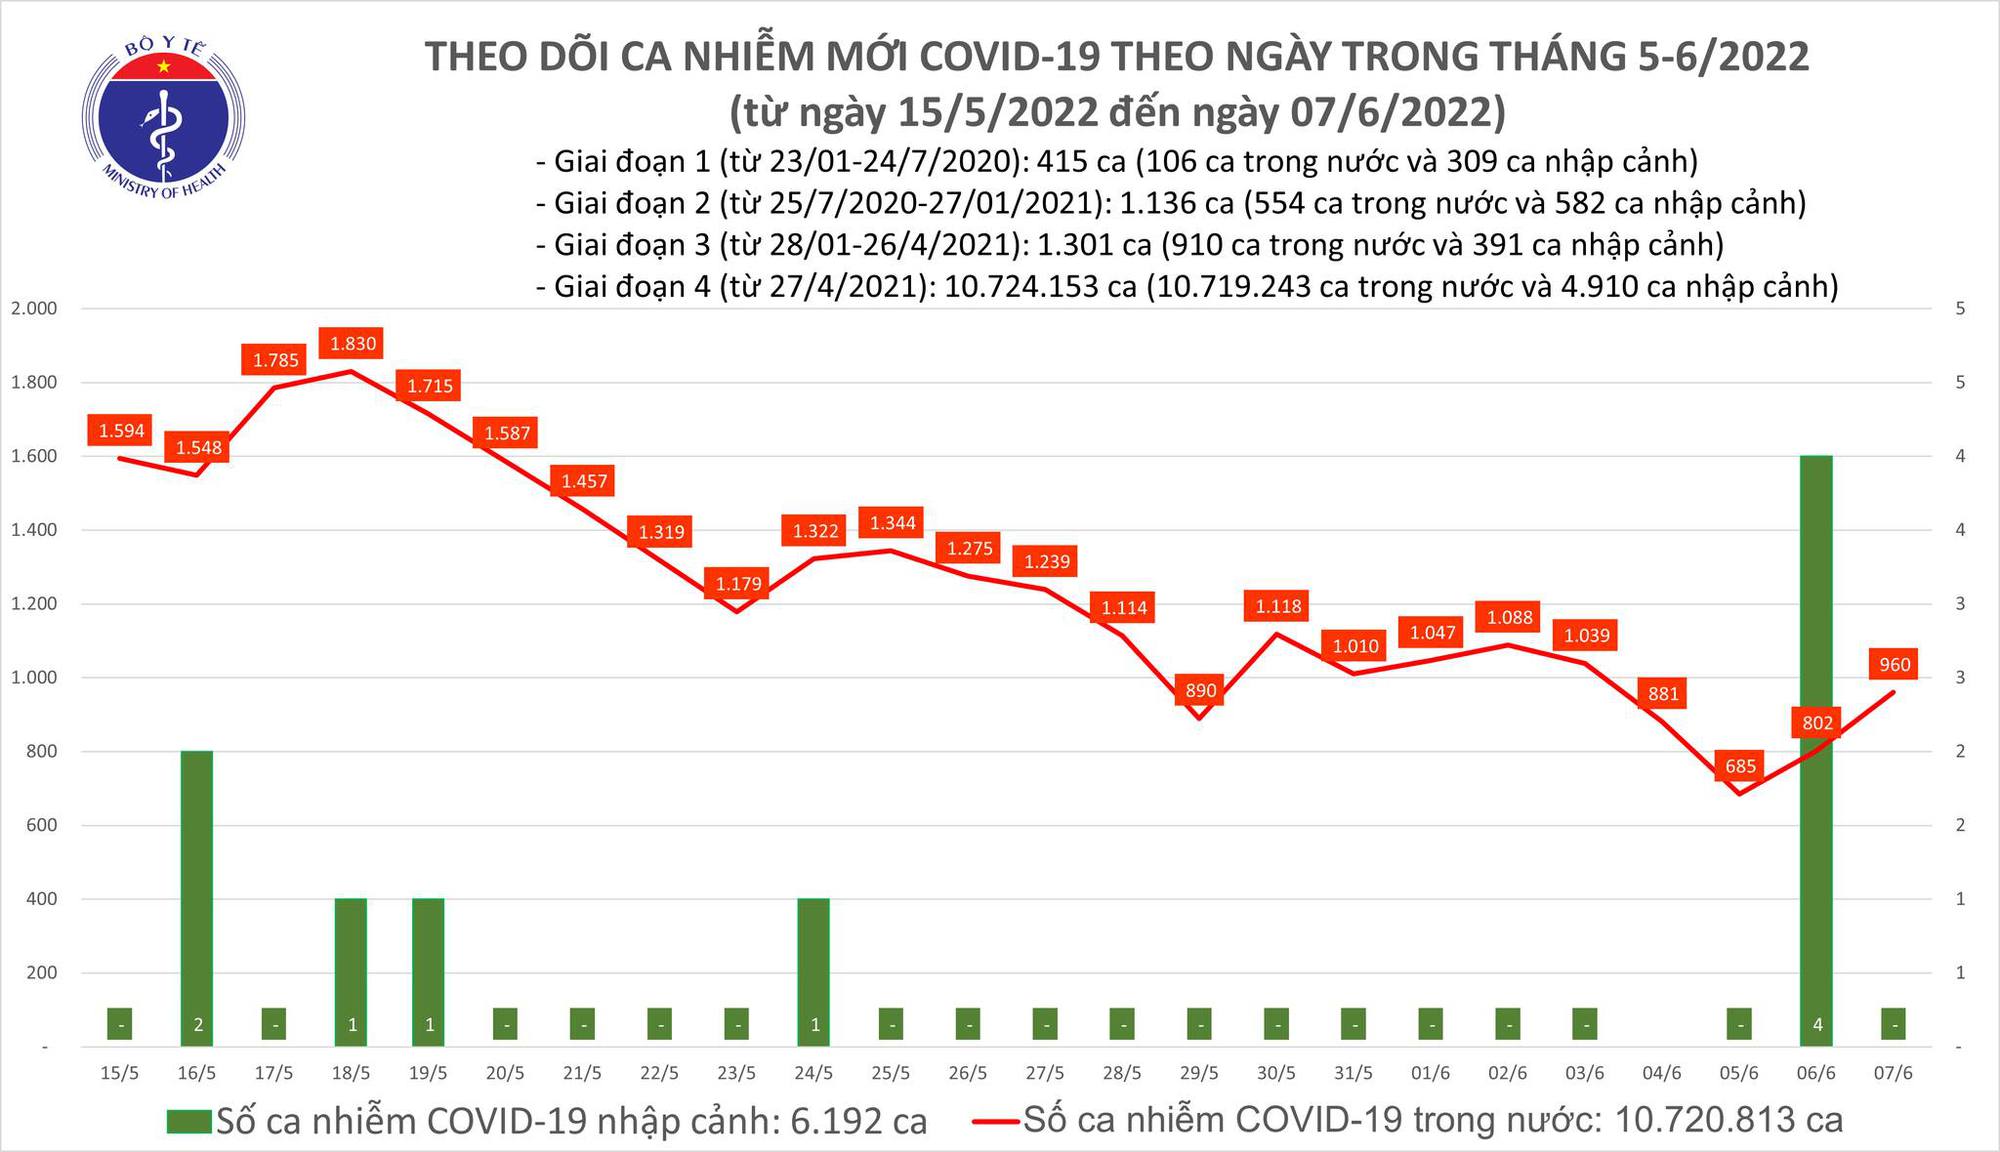 Ngày 7/6: 41 tỉnh, thành nào ghi nhận 960 ca COVID-19? F0 khỏi gấp gần 10 lần mắc mới - Ảnh 1.